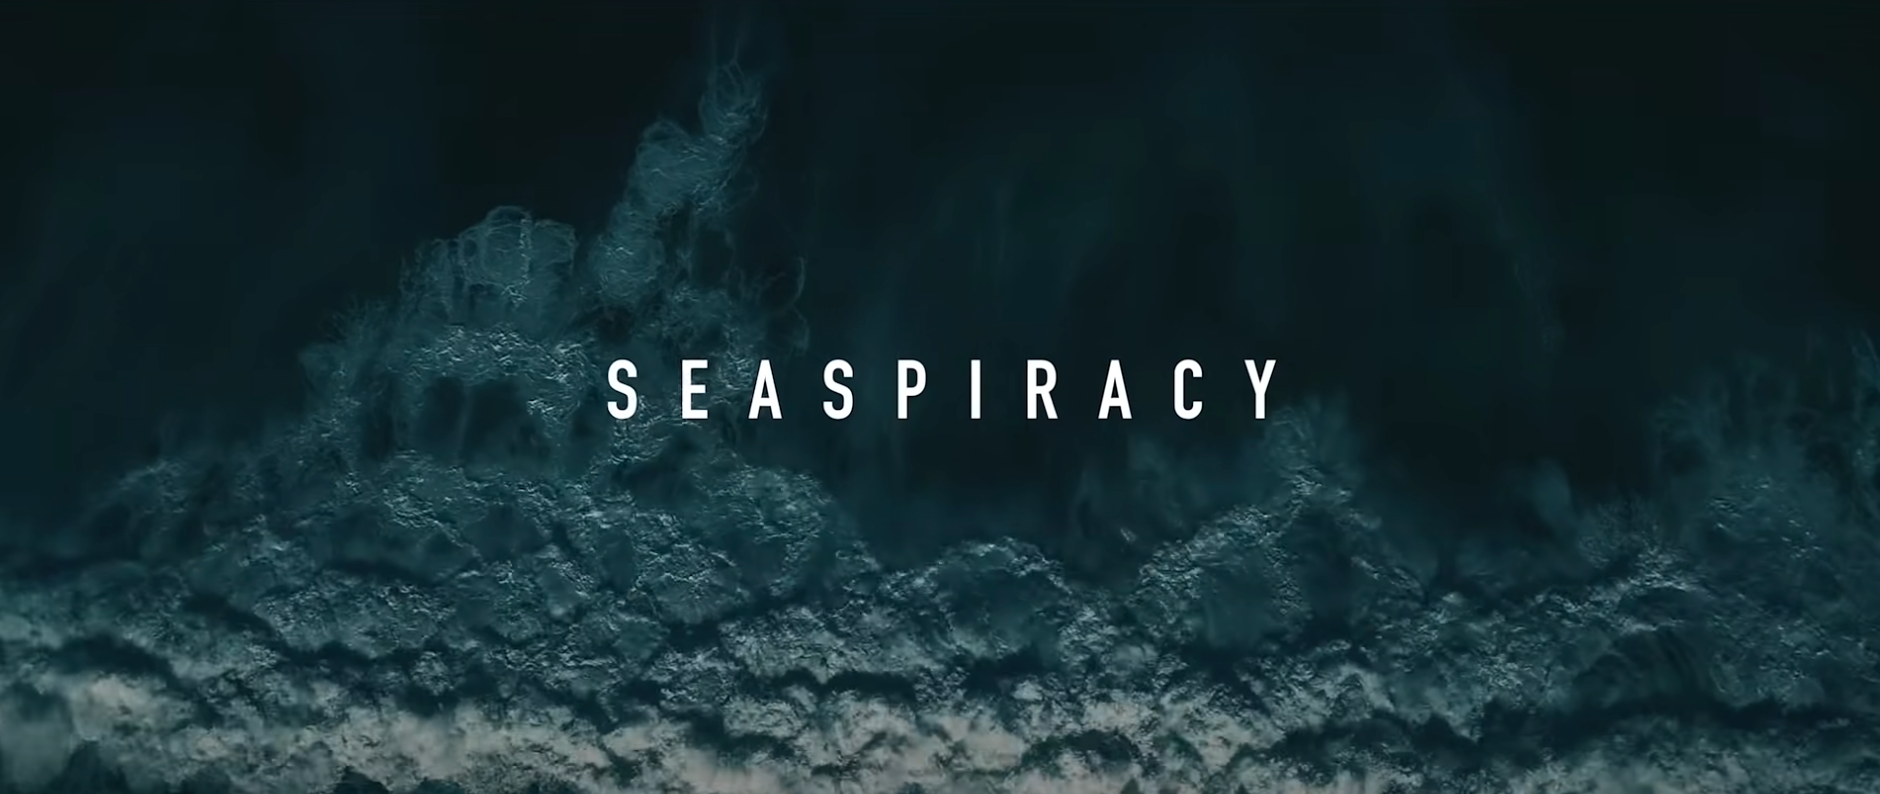 Ein paar Gedanken zu Seaspiracy